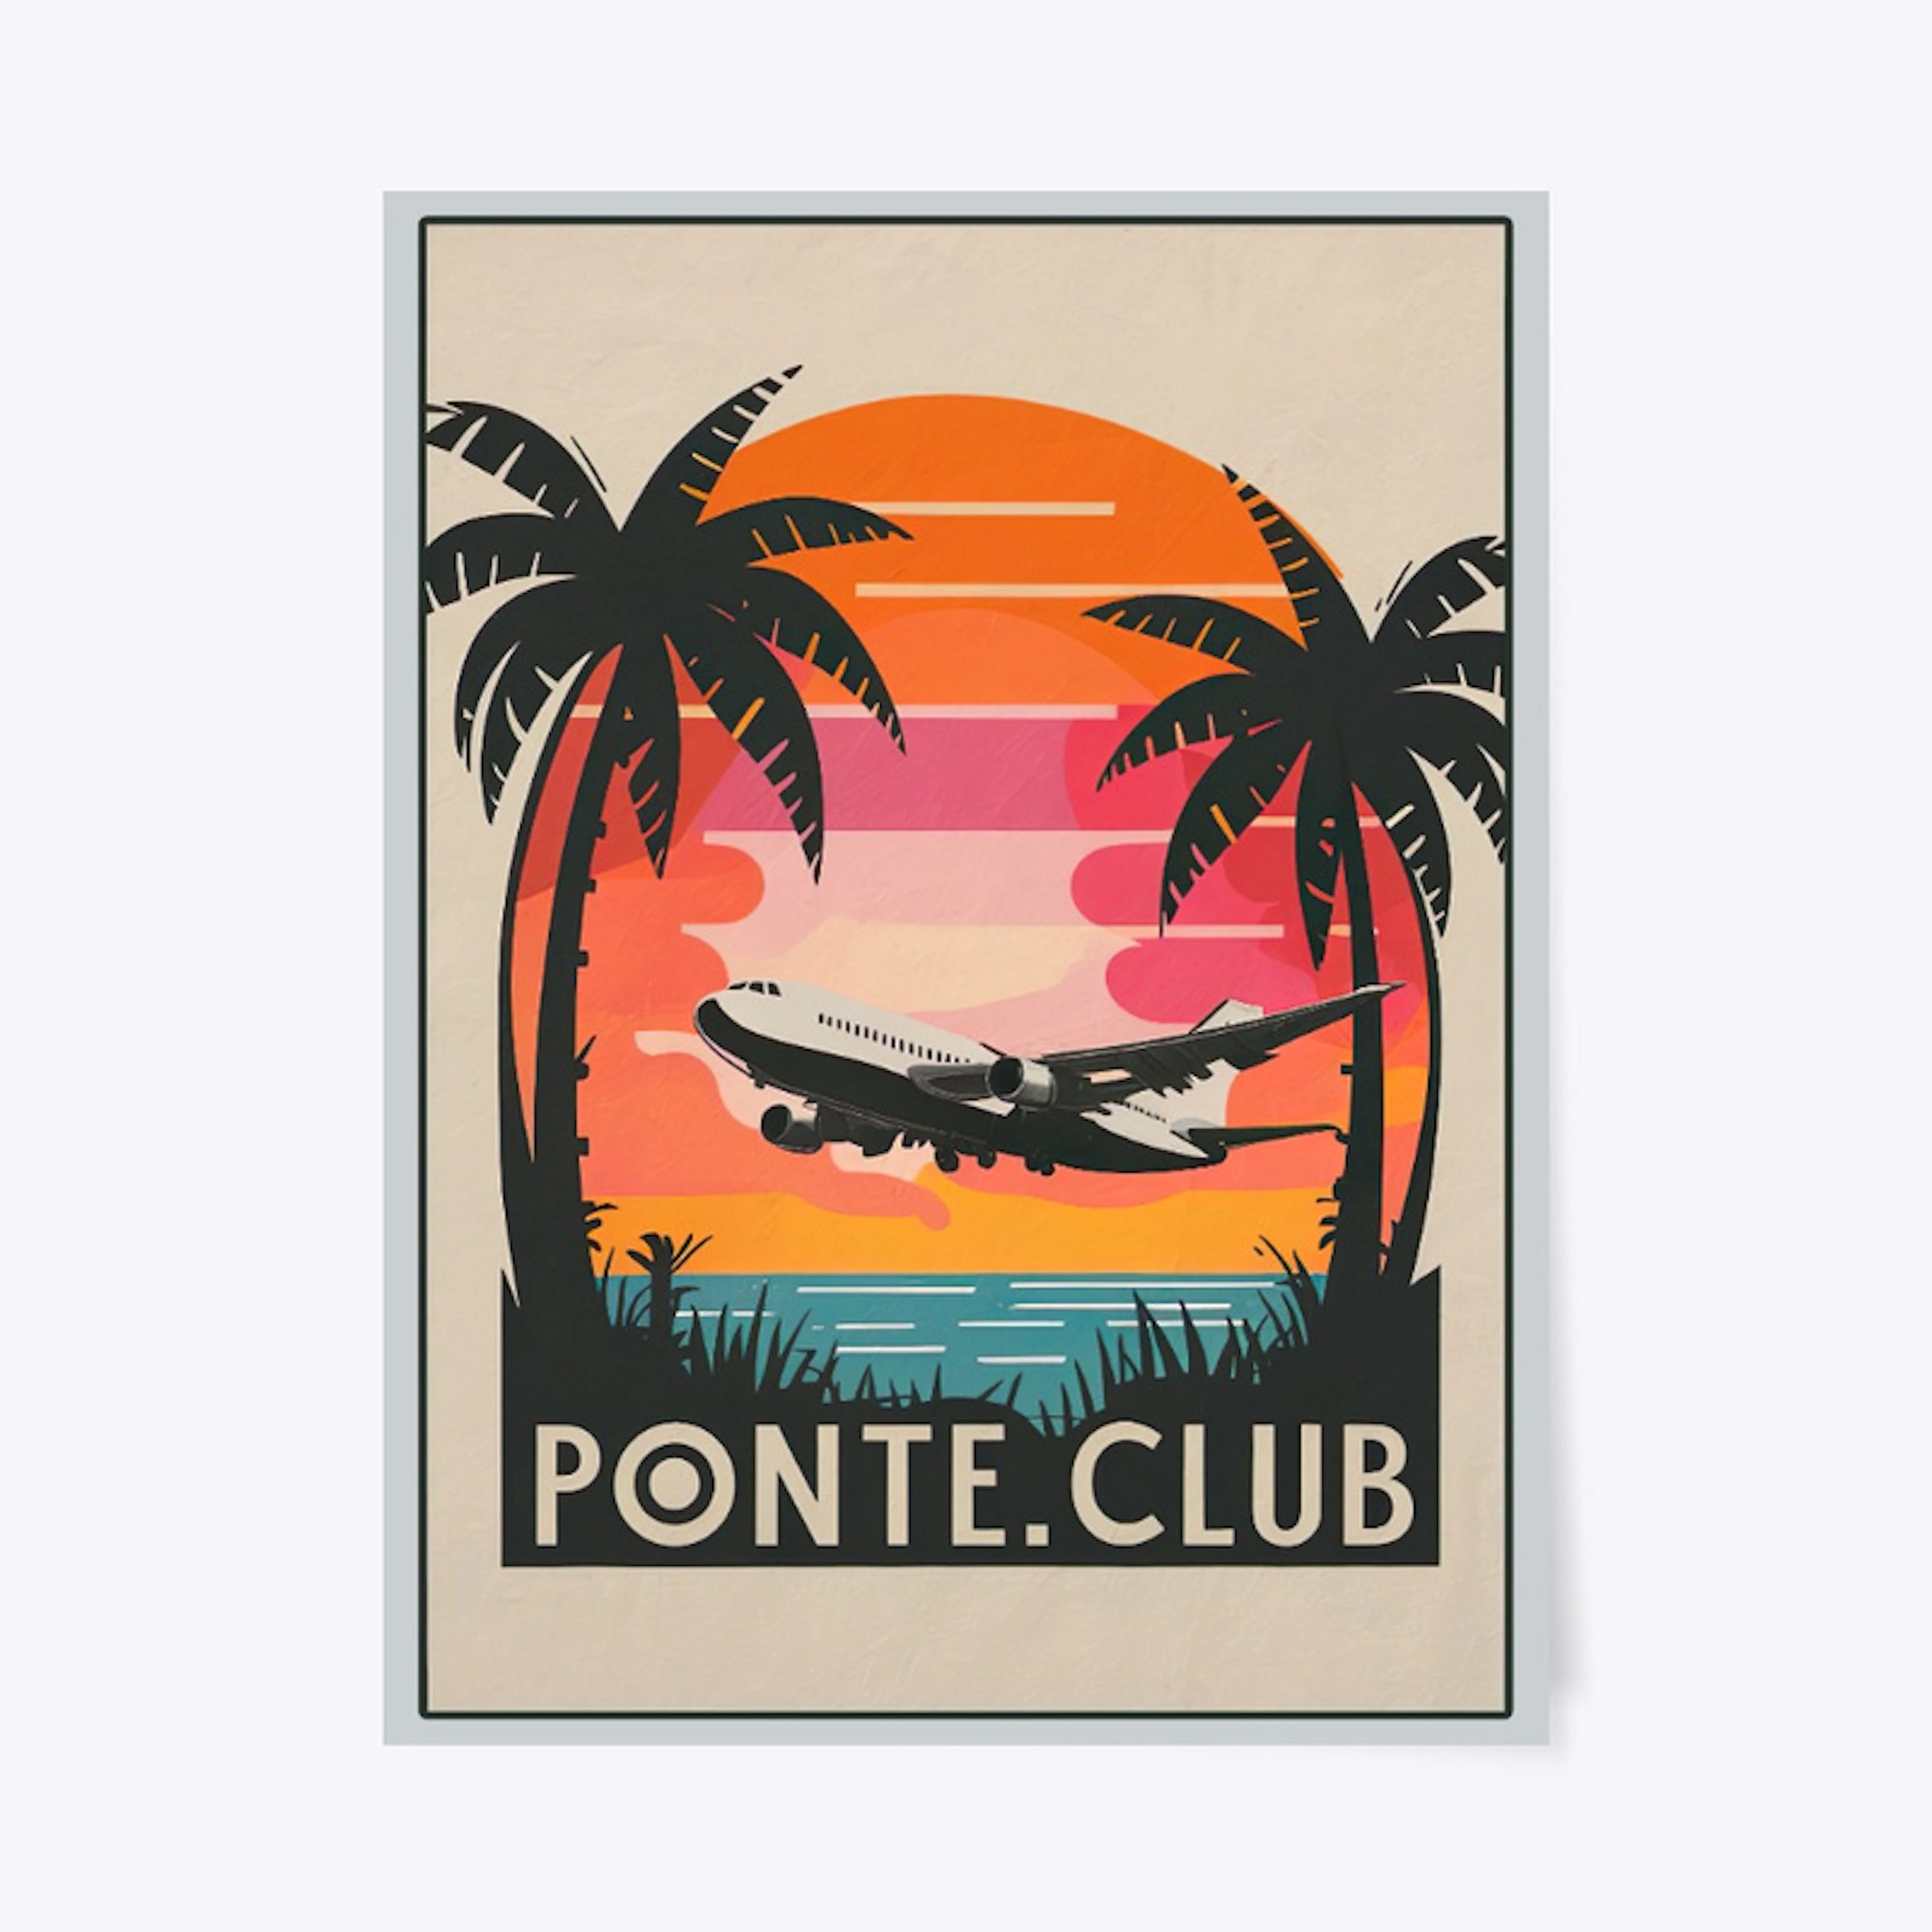 Ponte.Club